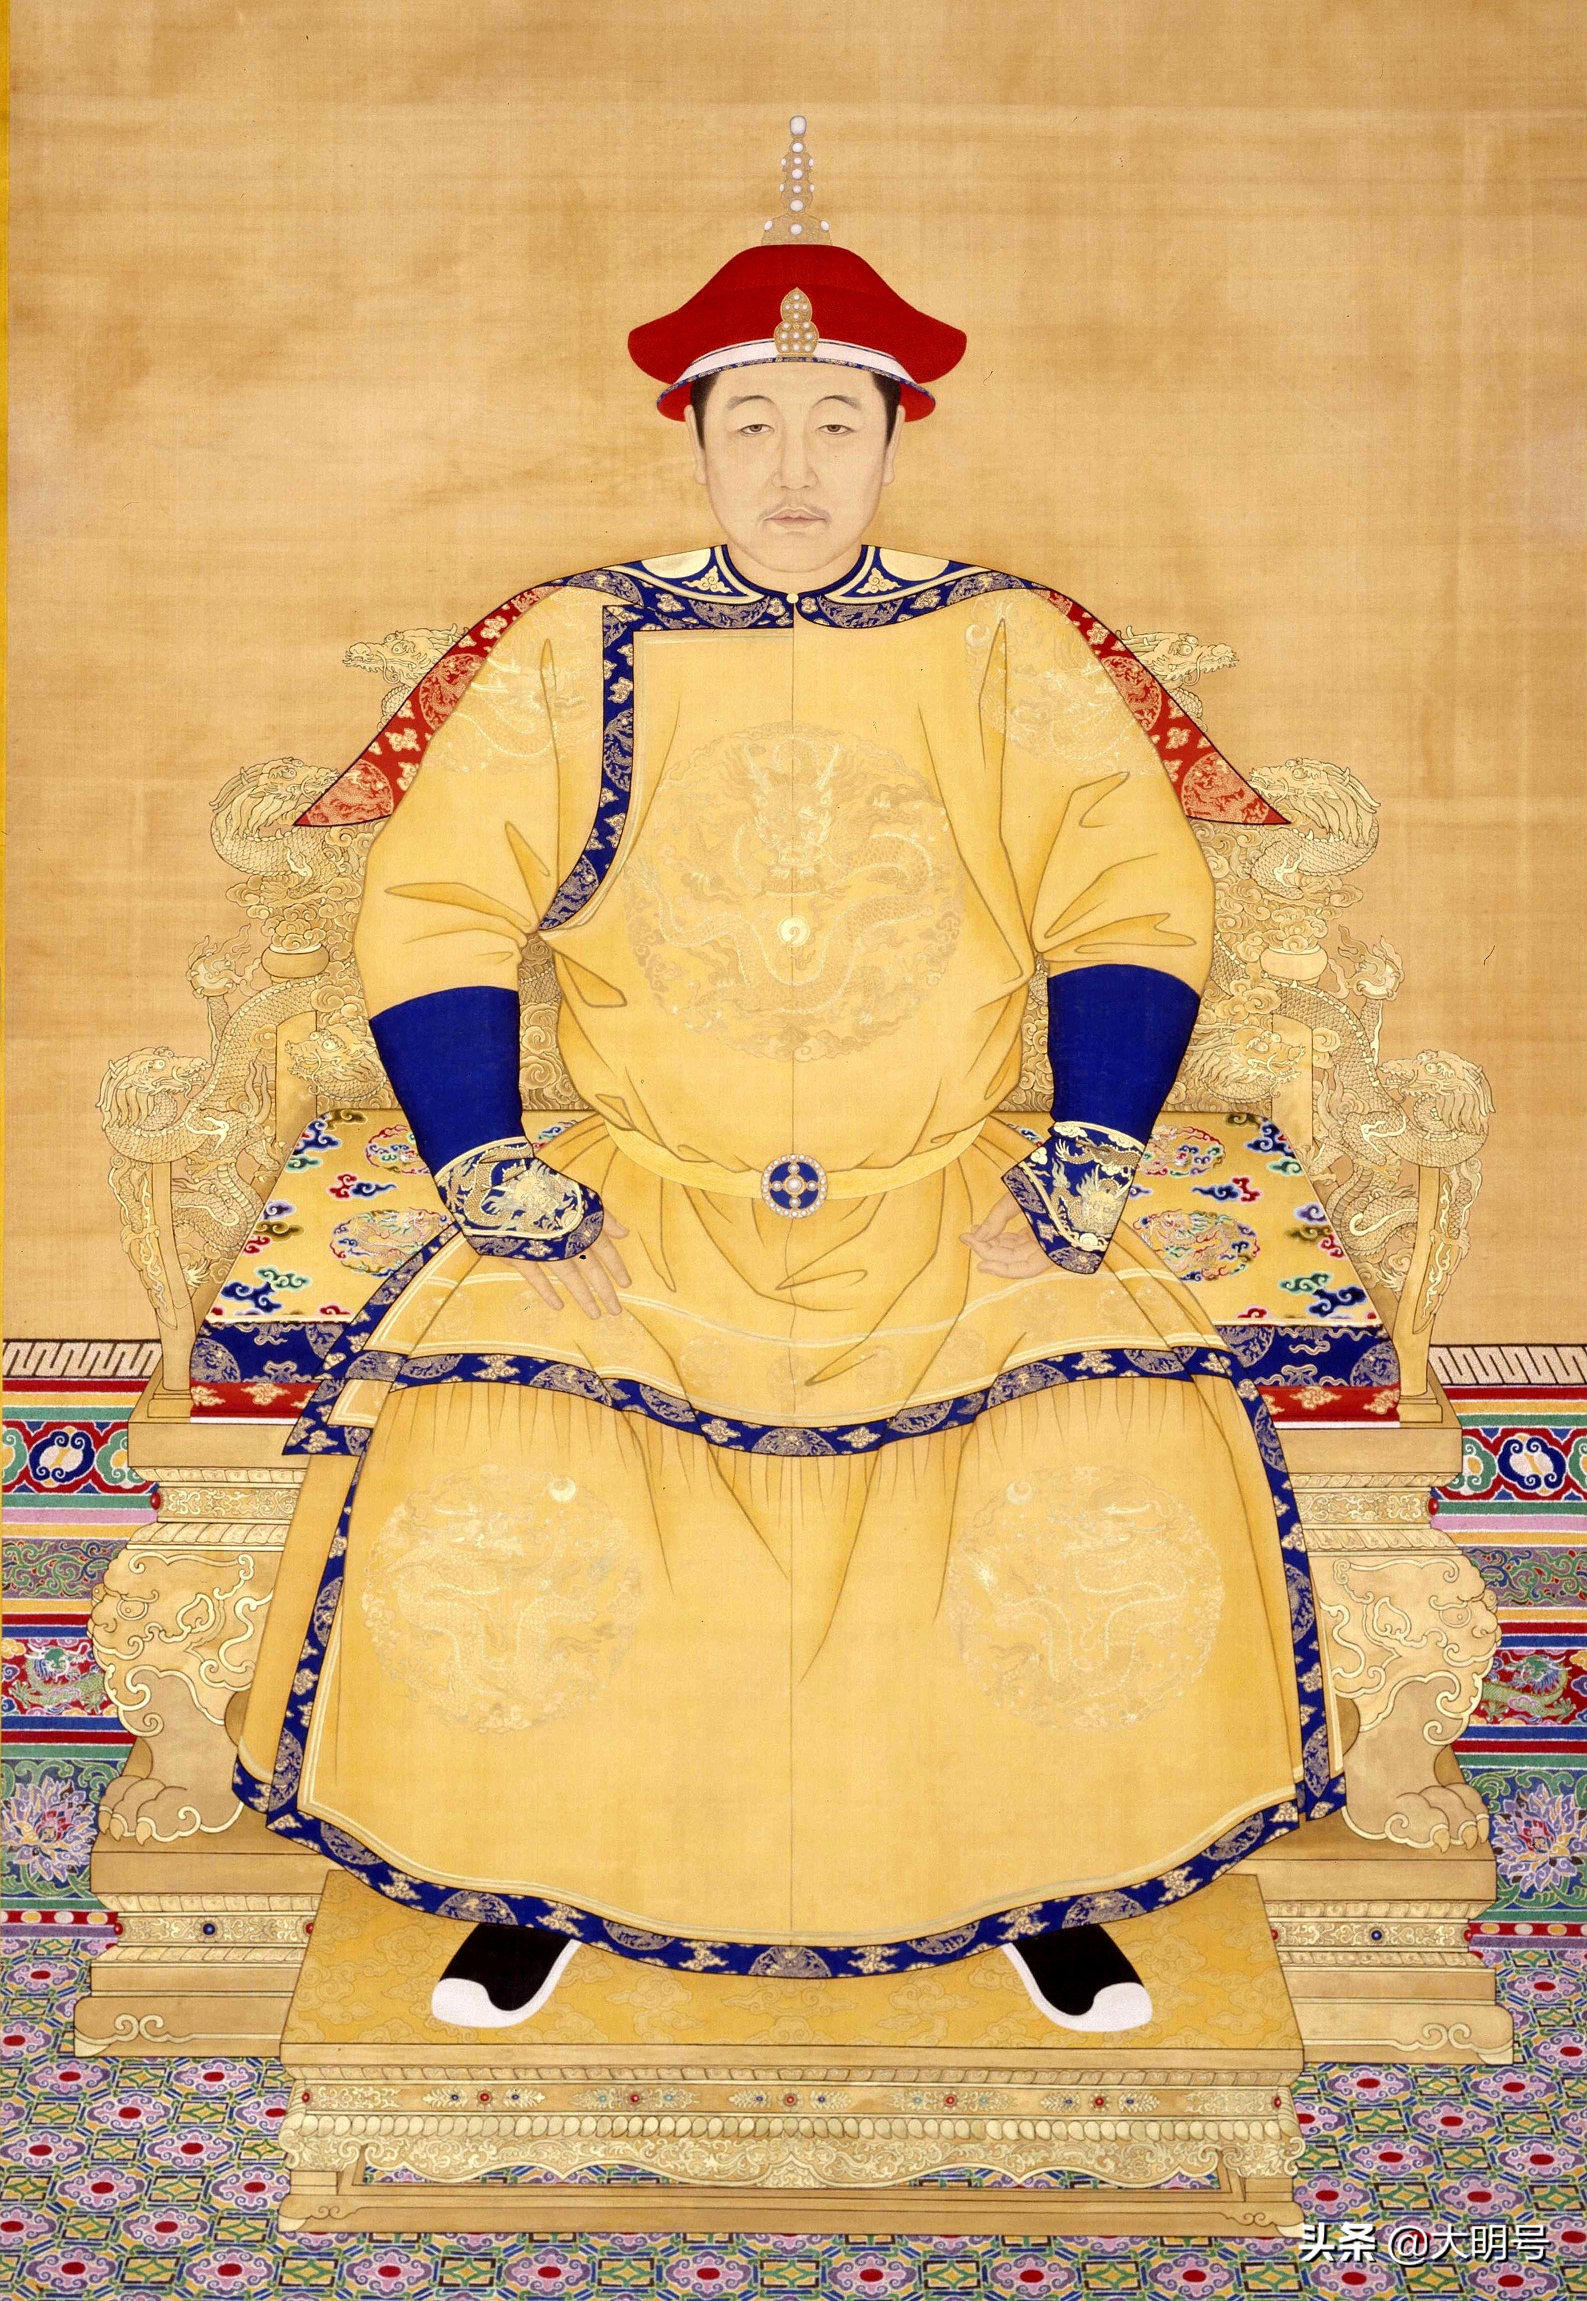 清朝皇帝世系图，共计276年11帝，最后三个皇帝均无嗣而终